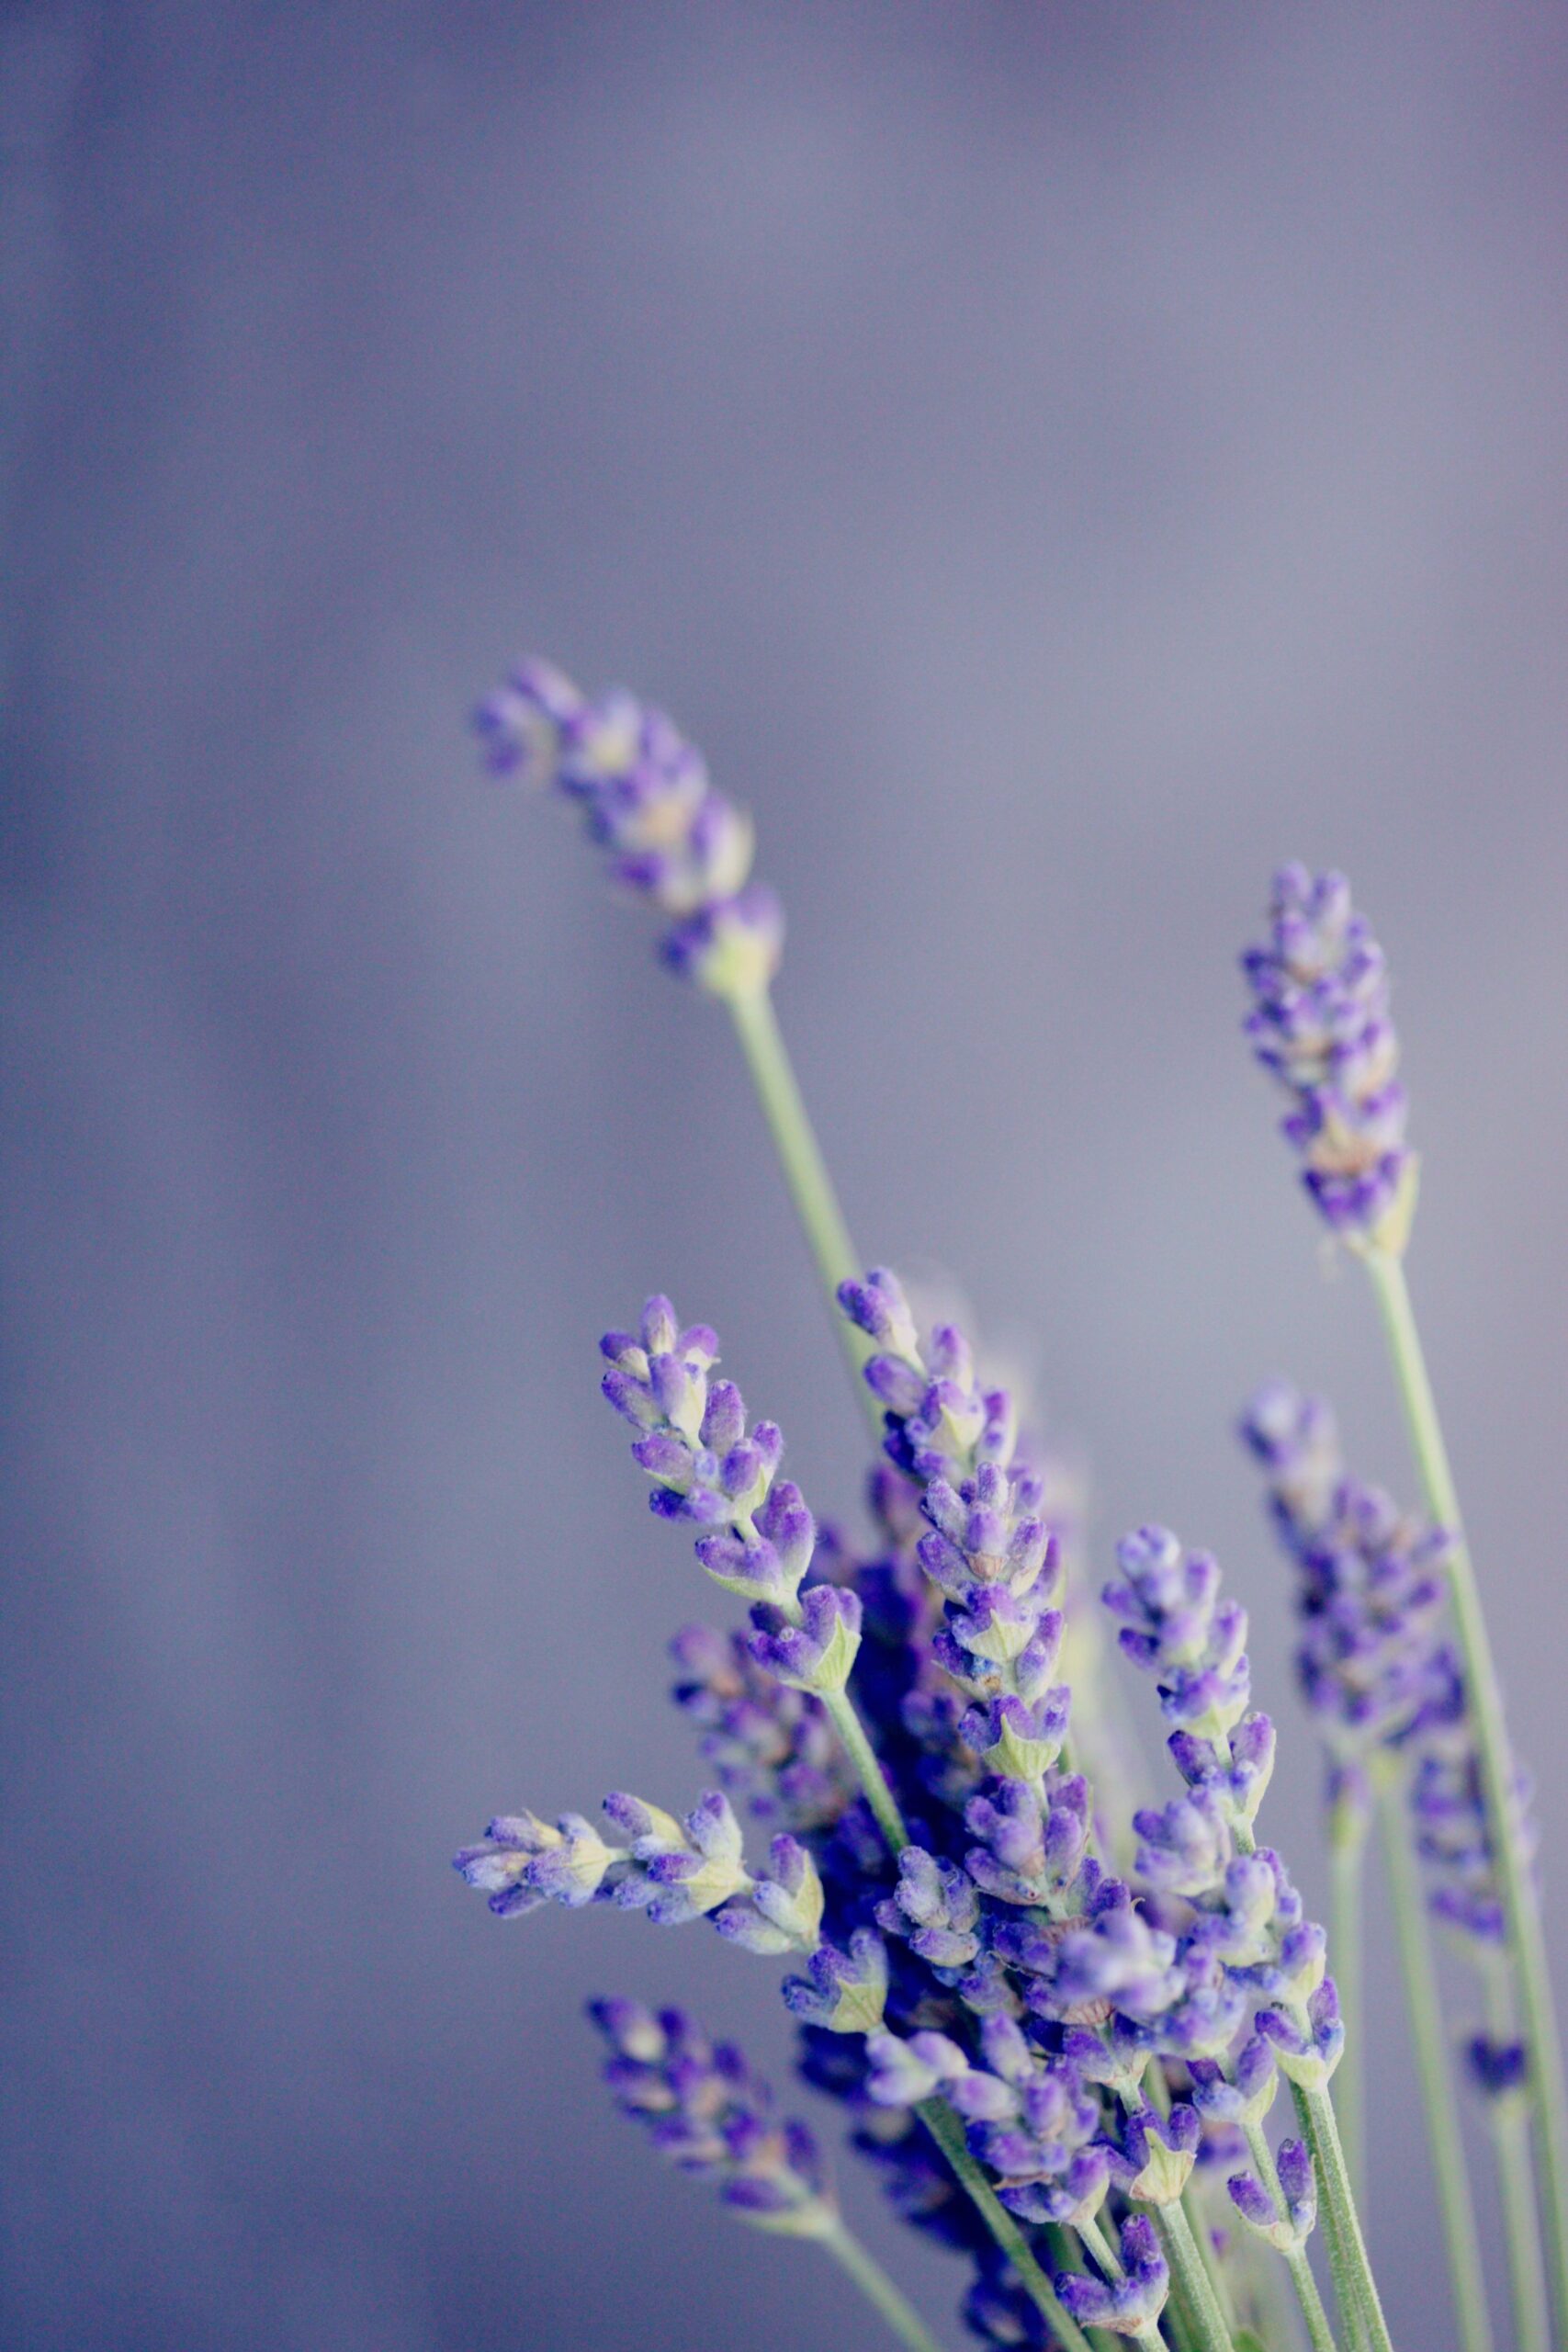 Màu tím ẩn chứa nhiều ý nghĩa sâu sắc của hoa Lavender. Đây là một màu sắc thanh lịch, là sự kết hợp giữa sự tinh tế và sự trầm lặng tuyệt vời. Hoa Lavender tượng trưng cho sự thanh khiết, sự tinh tế và sự mặn mà trong cuộc sống. Hãy để bức ảnh này truyền tải những thông điệp sâu sắc đến bạn.